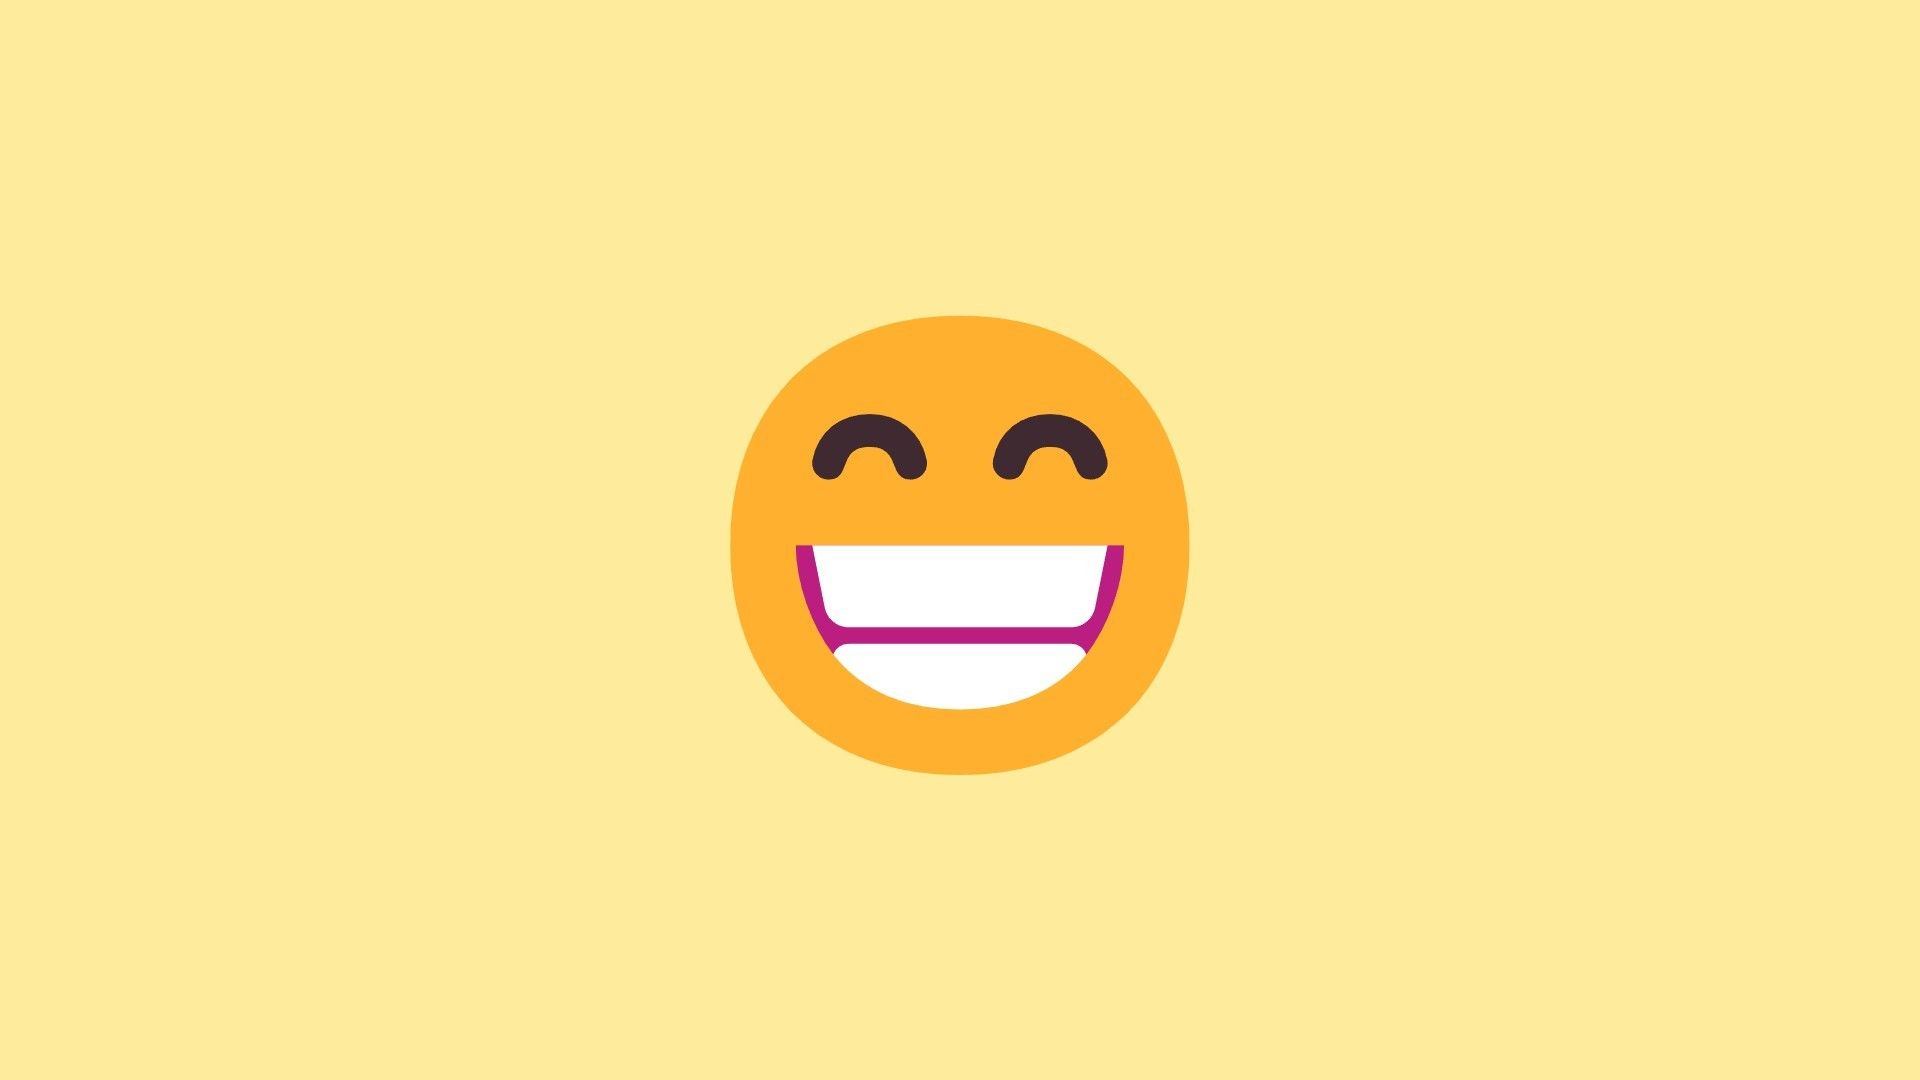 emoji 12 beaming face with smiling eyes